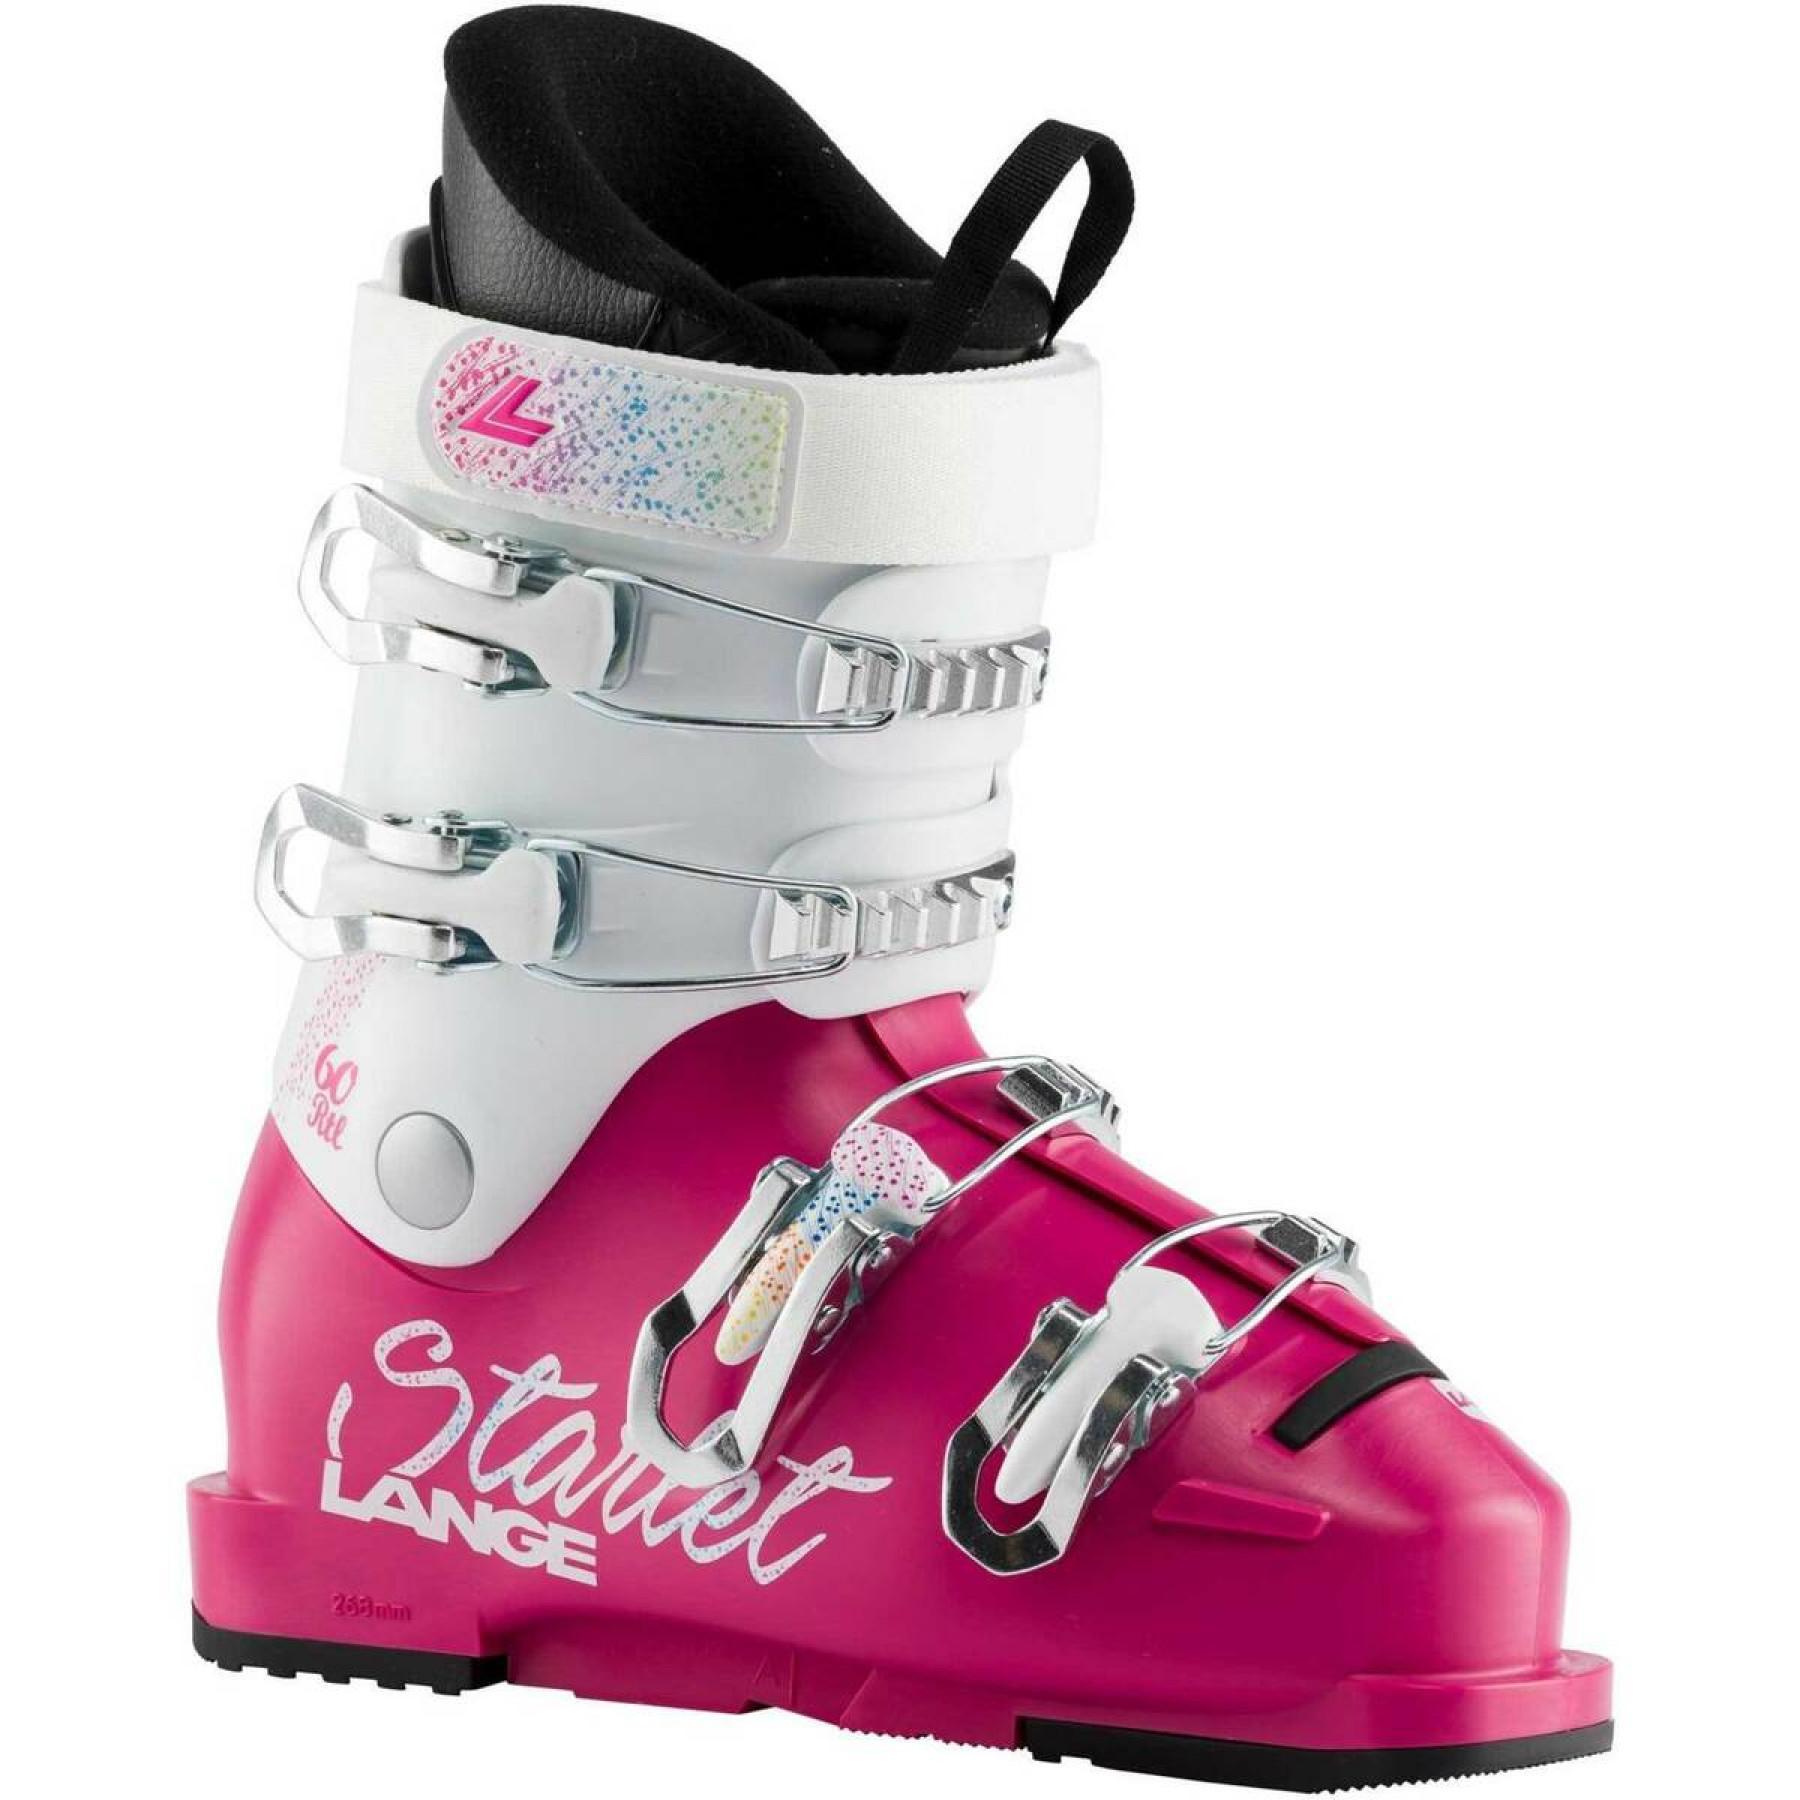 Zapatillas de esquí niños Lange starlet 60 rtl